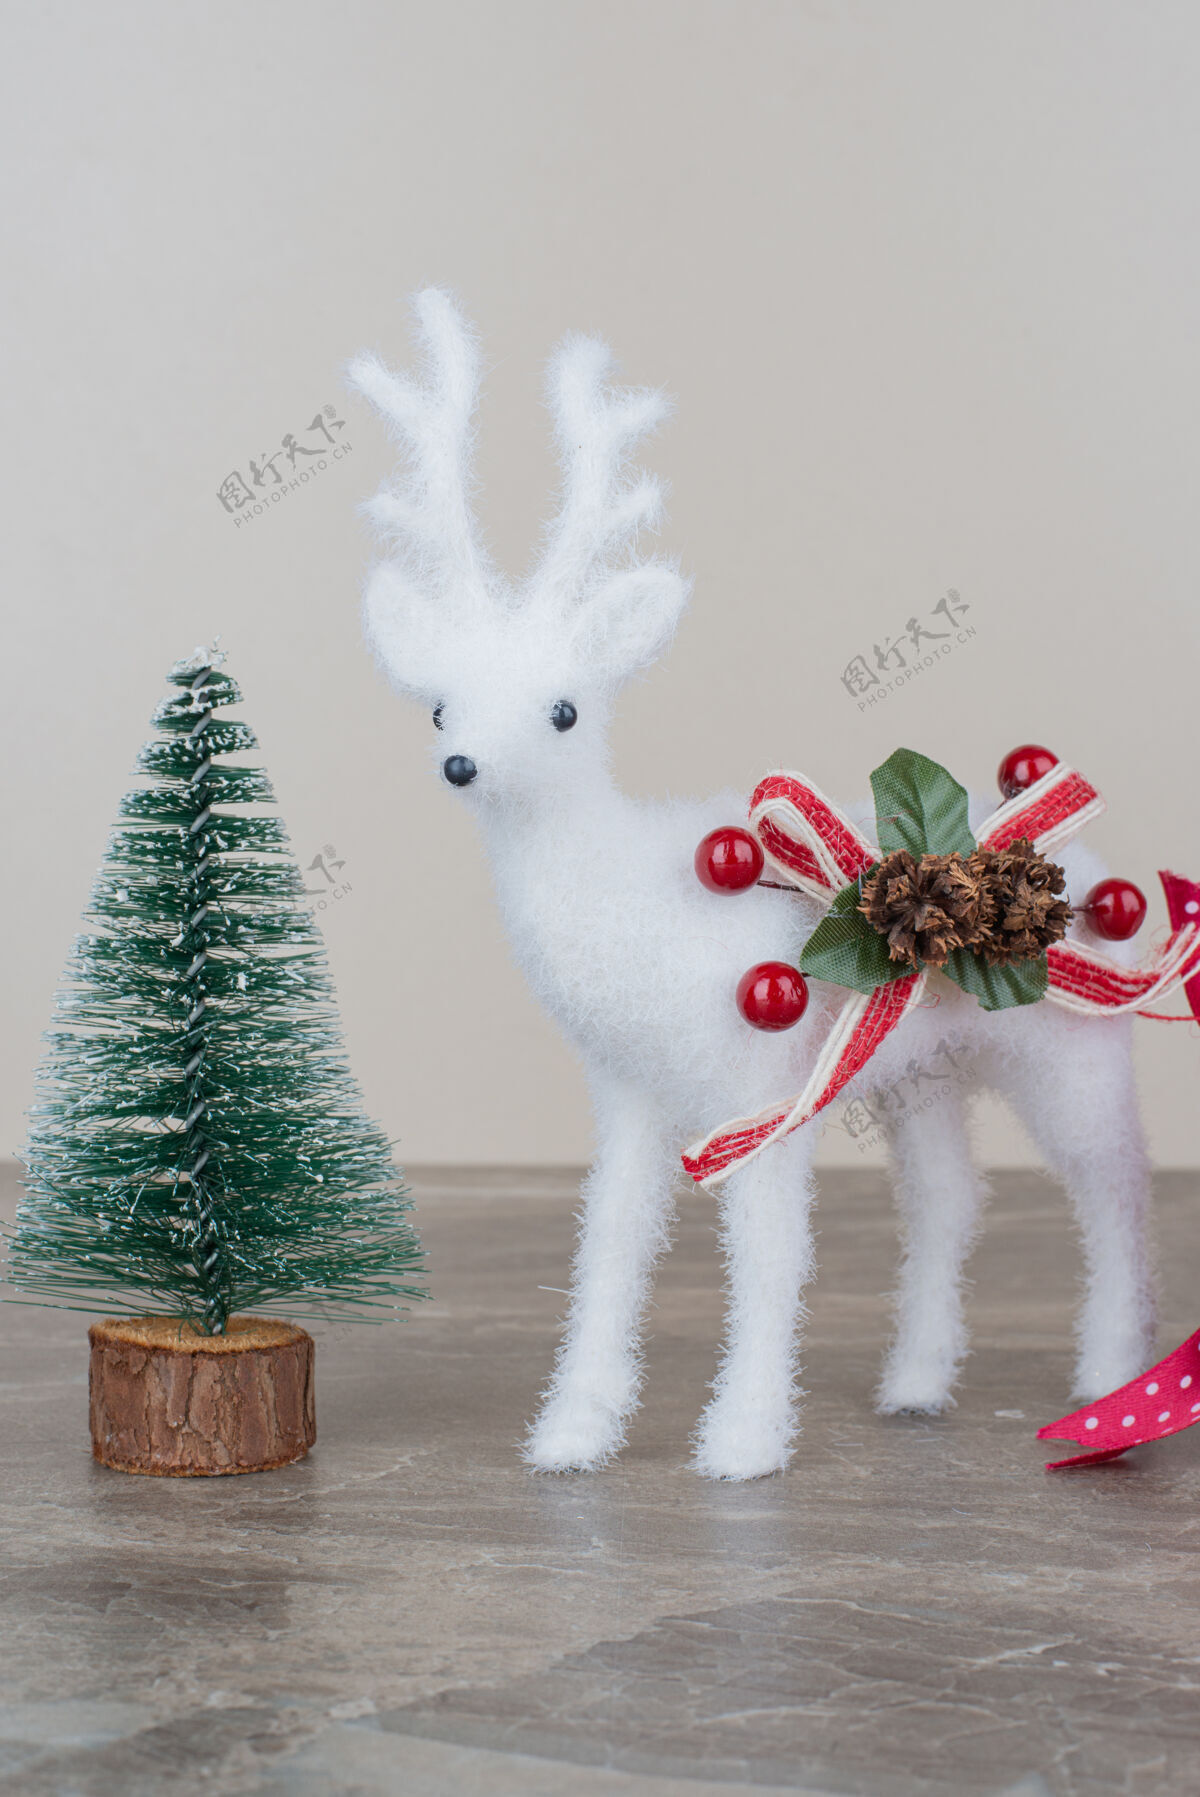 装饰品松树和玩具鹿放在大理石桌上圣诞节鹿松果